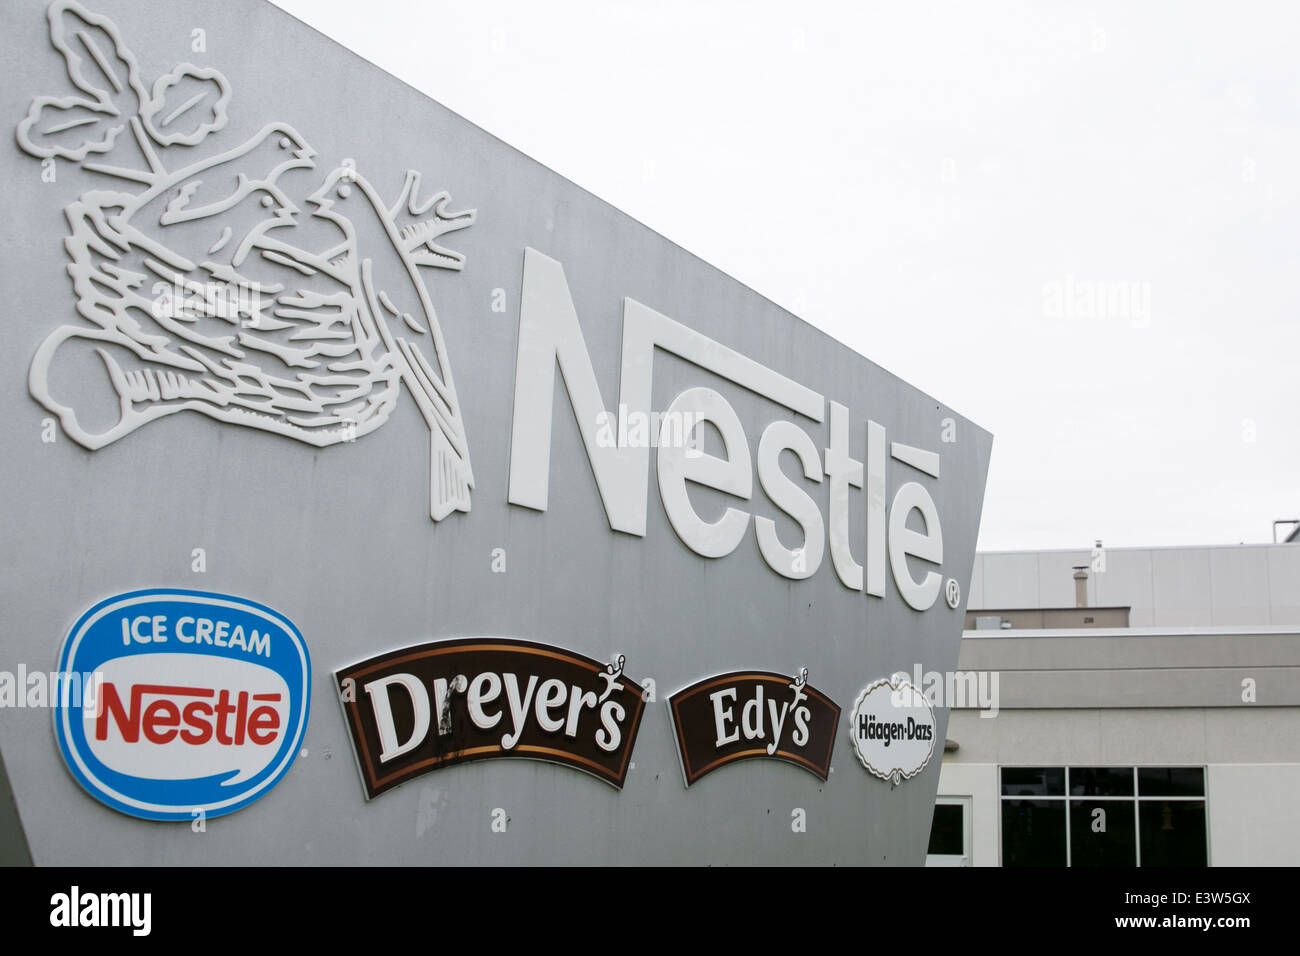 Le Centre d'exploitation Laurel de Nestlé Amérique du Nord. L'usine fabrique les produits Dreyer's, Edy's, Haagen-Daz et Nestlé Ice Cream. Banque D'Images